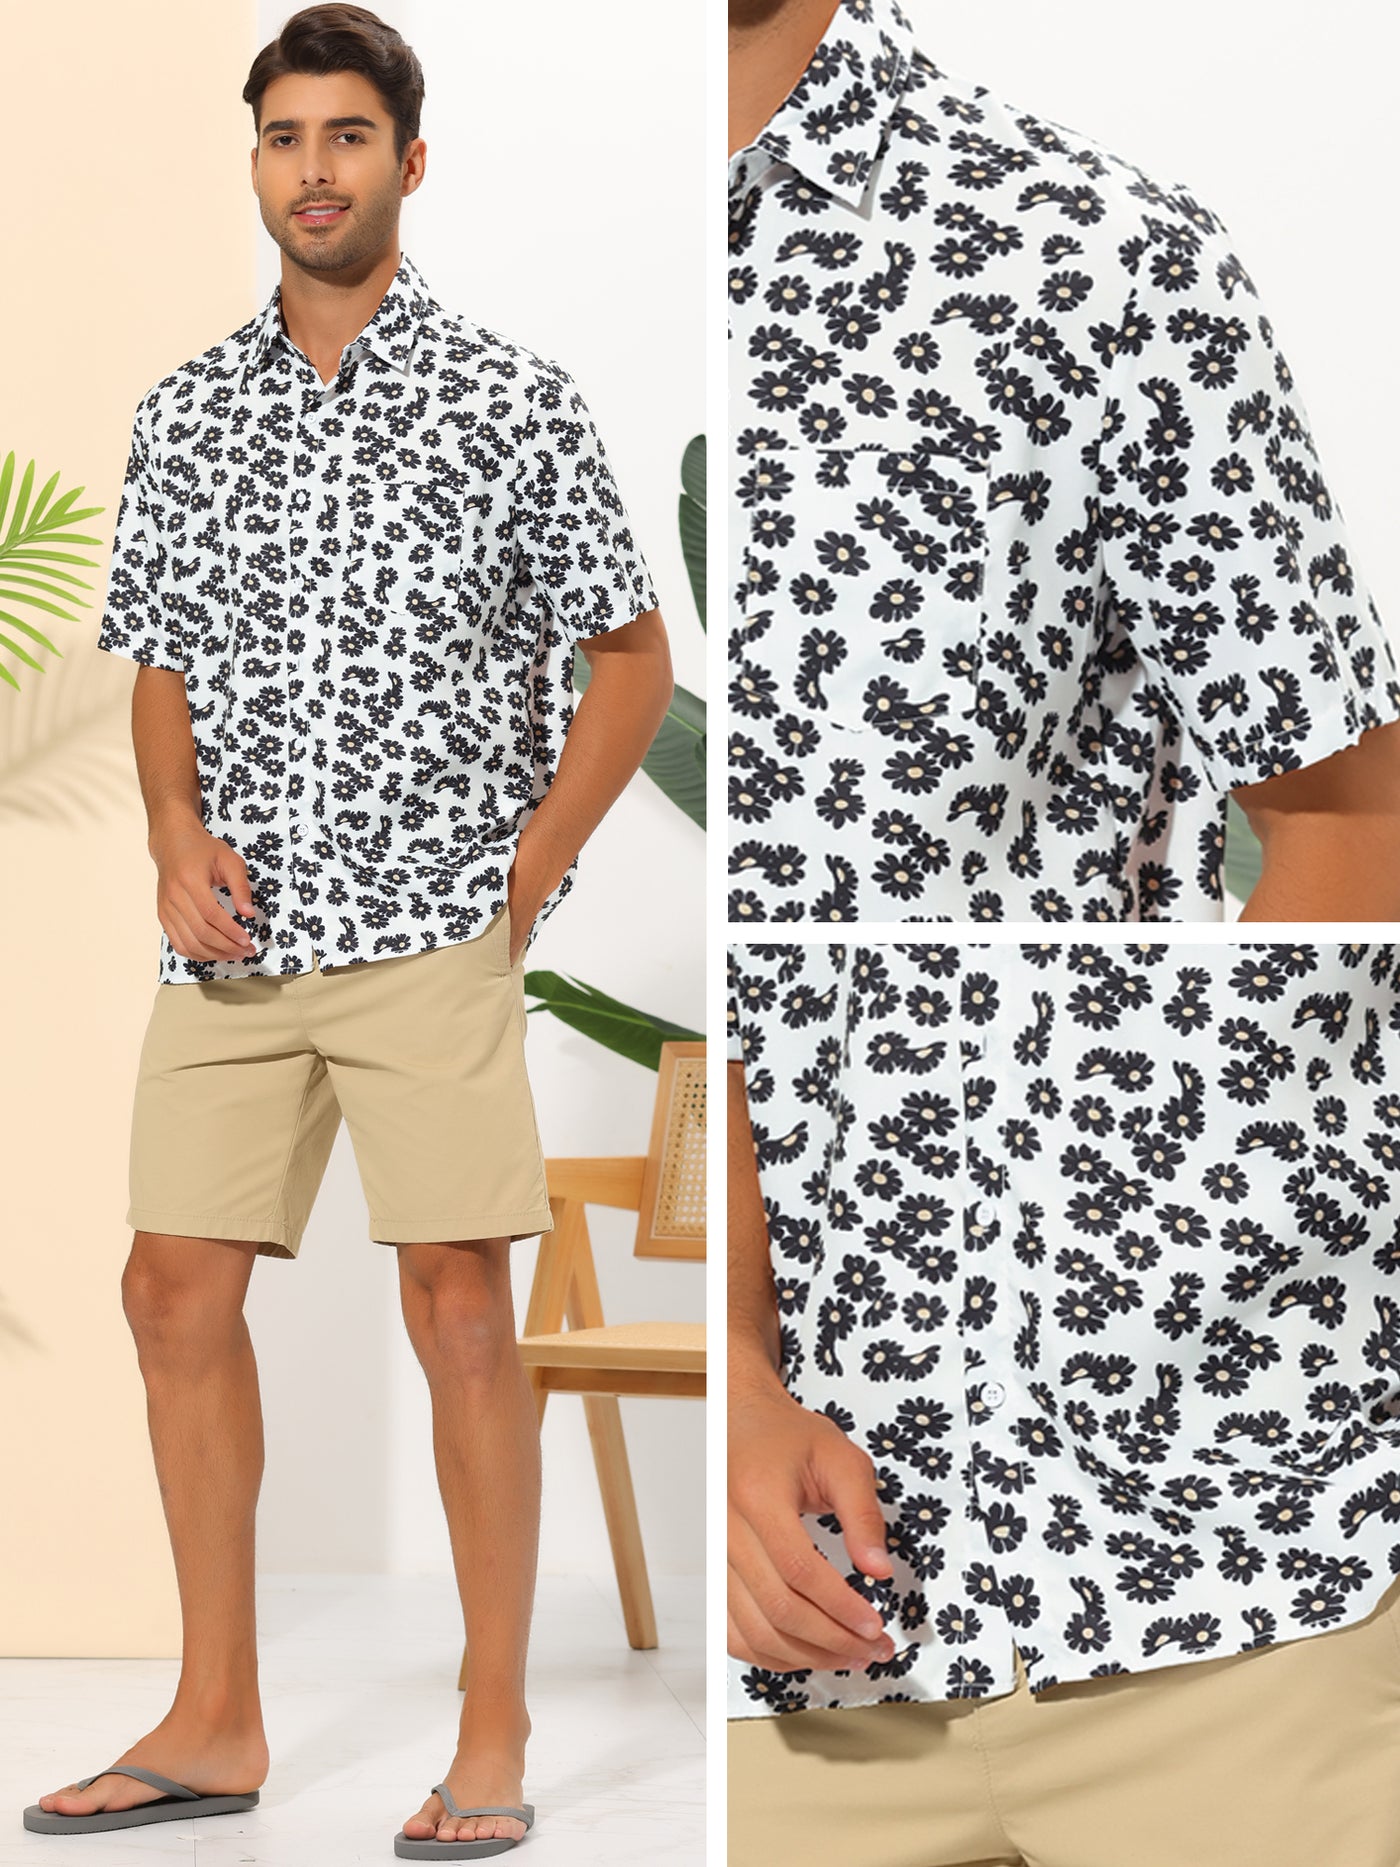 Bublédon Daisy Flower Shirts for Men's Button Short Sleeve Summer Hawaiian Beach Floral Shirt